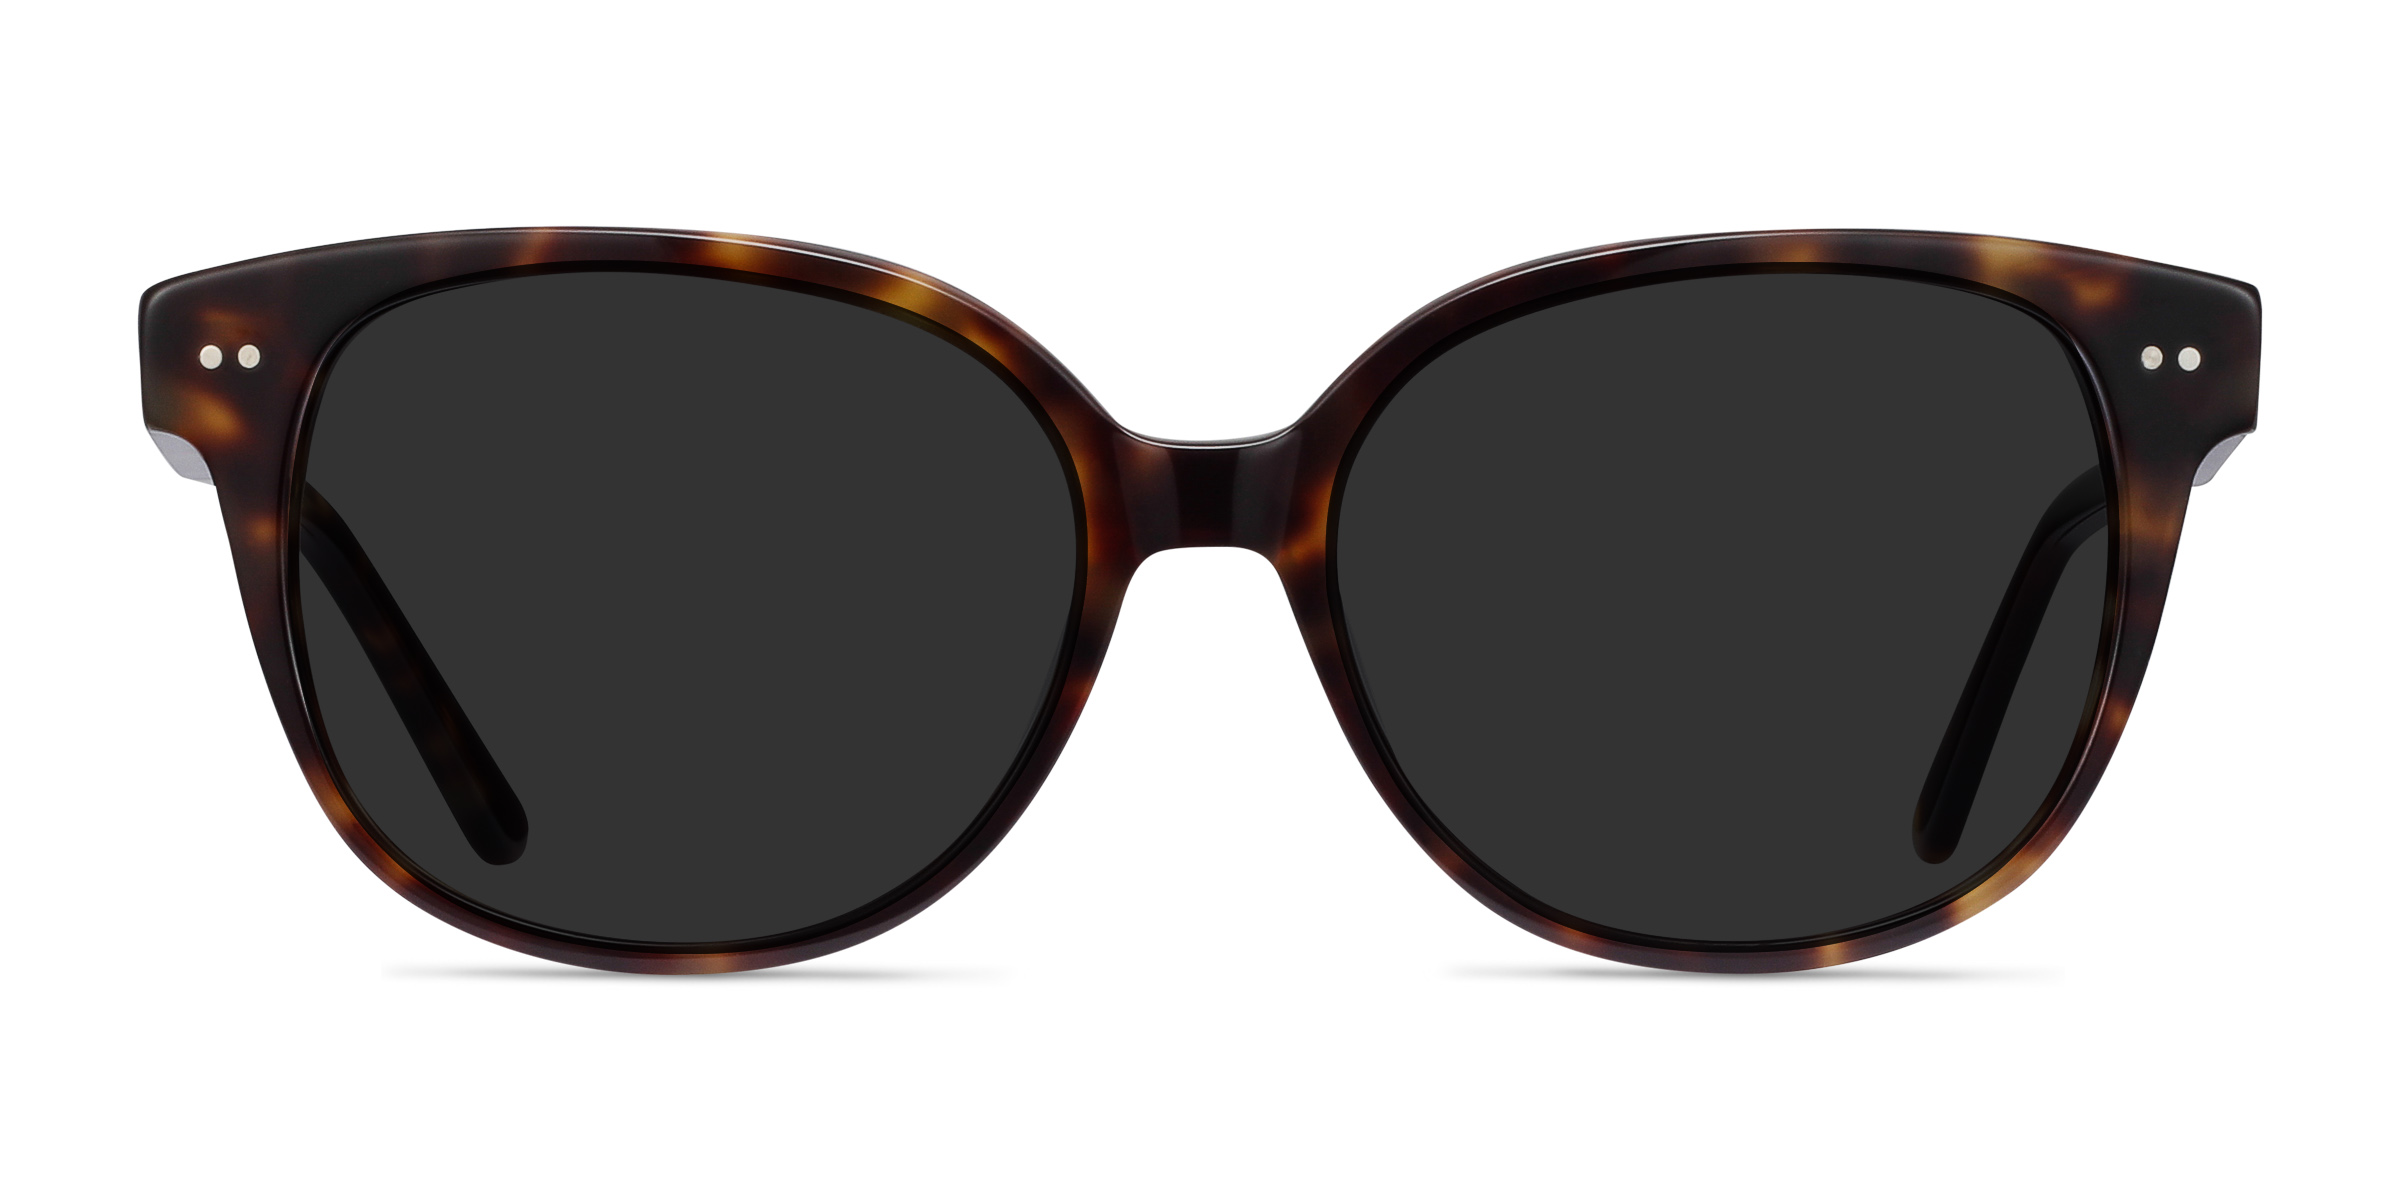 Lune Noire - Cat Eye Tortoise Frame Sunglasses For Women | Eyebuydirect